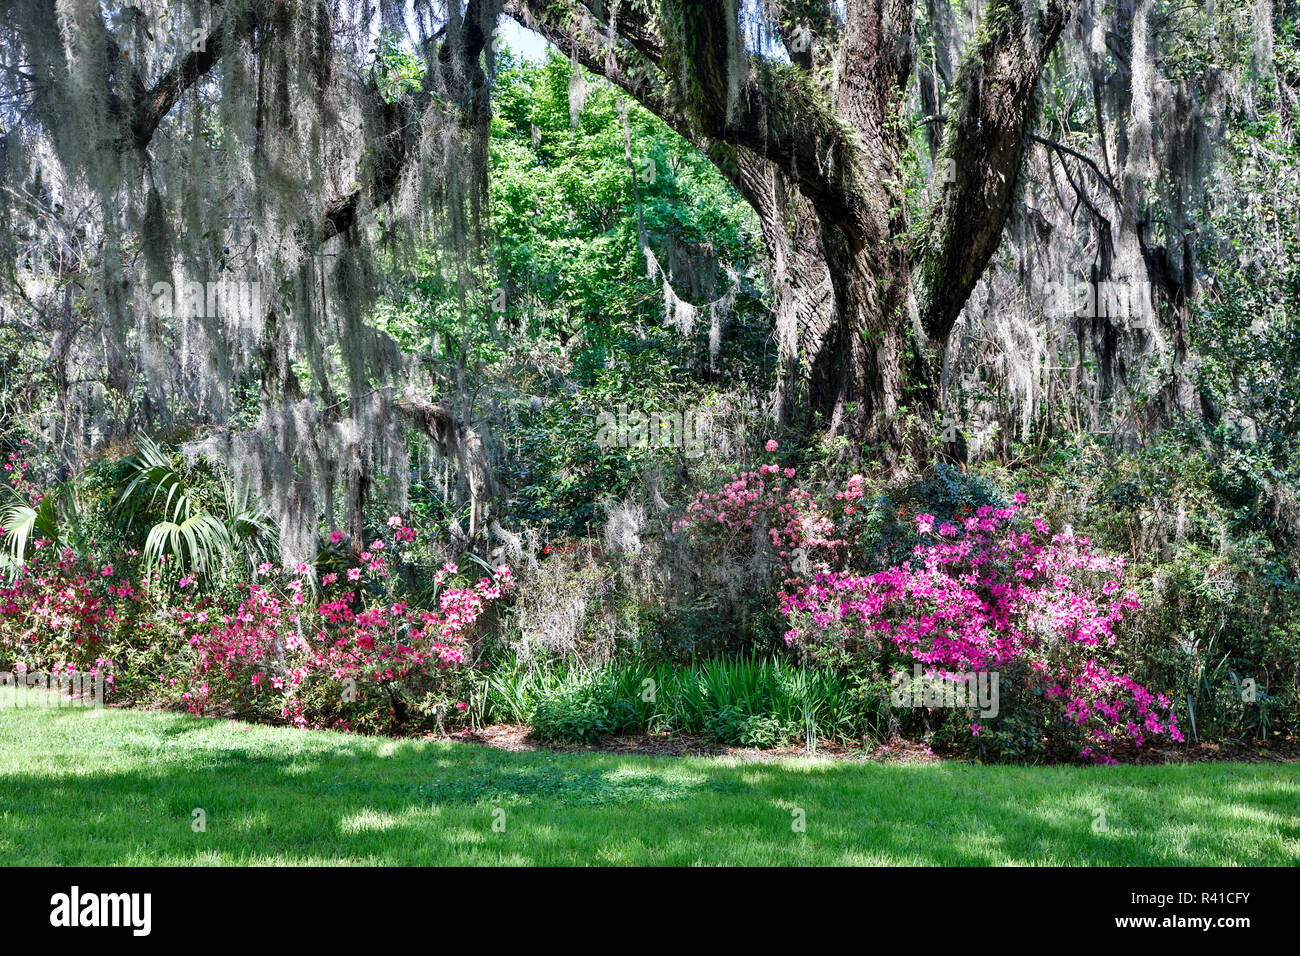 USA, North Carolina. Magnolia Plantation, moss-covered tree trunk with Azaleas Stock Photo